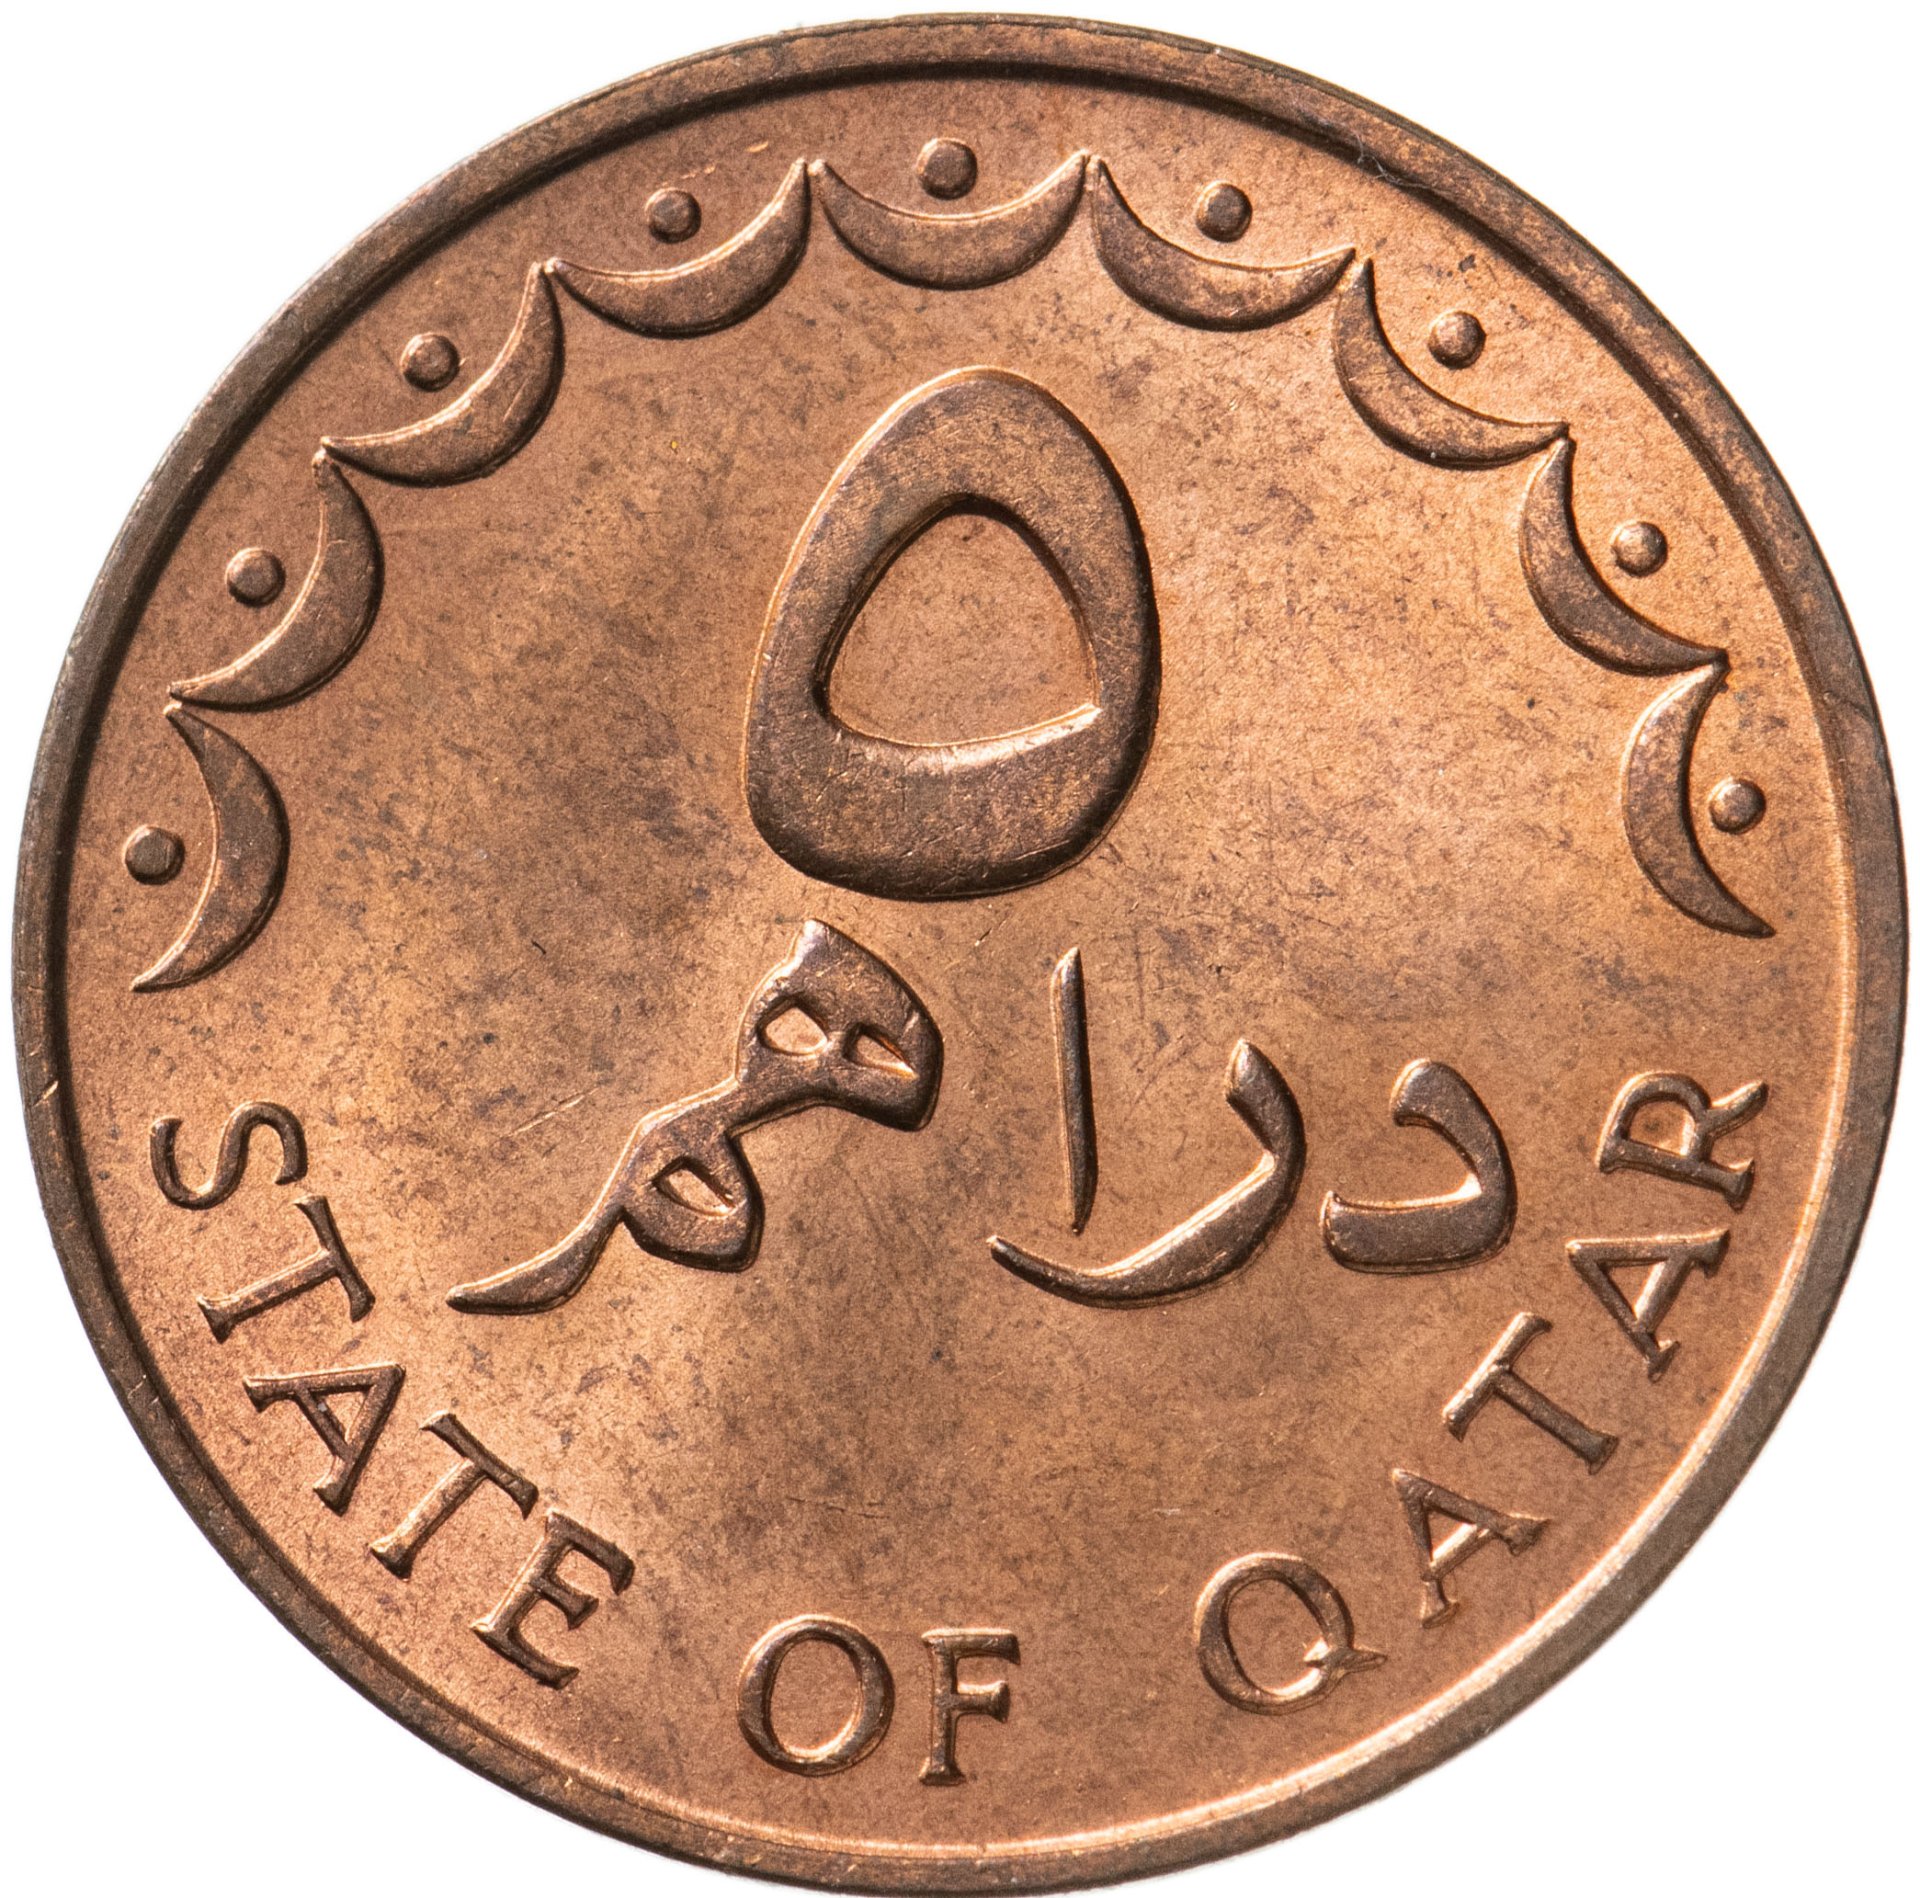 Монеты Катара. Монеты Катара каталог. Миллион марокканских дирхам. 18 дирхам